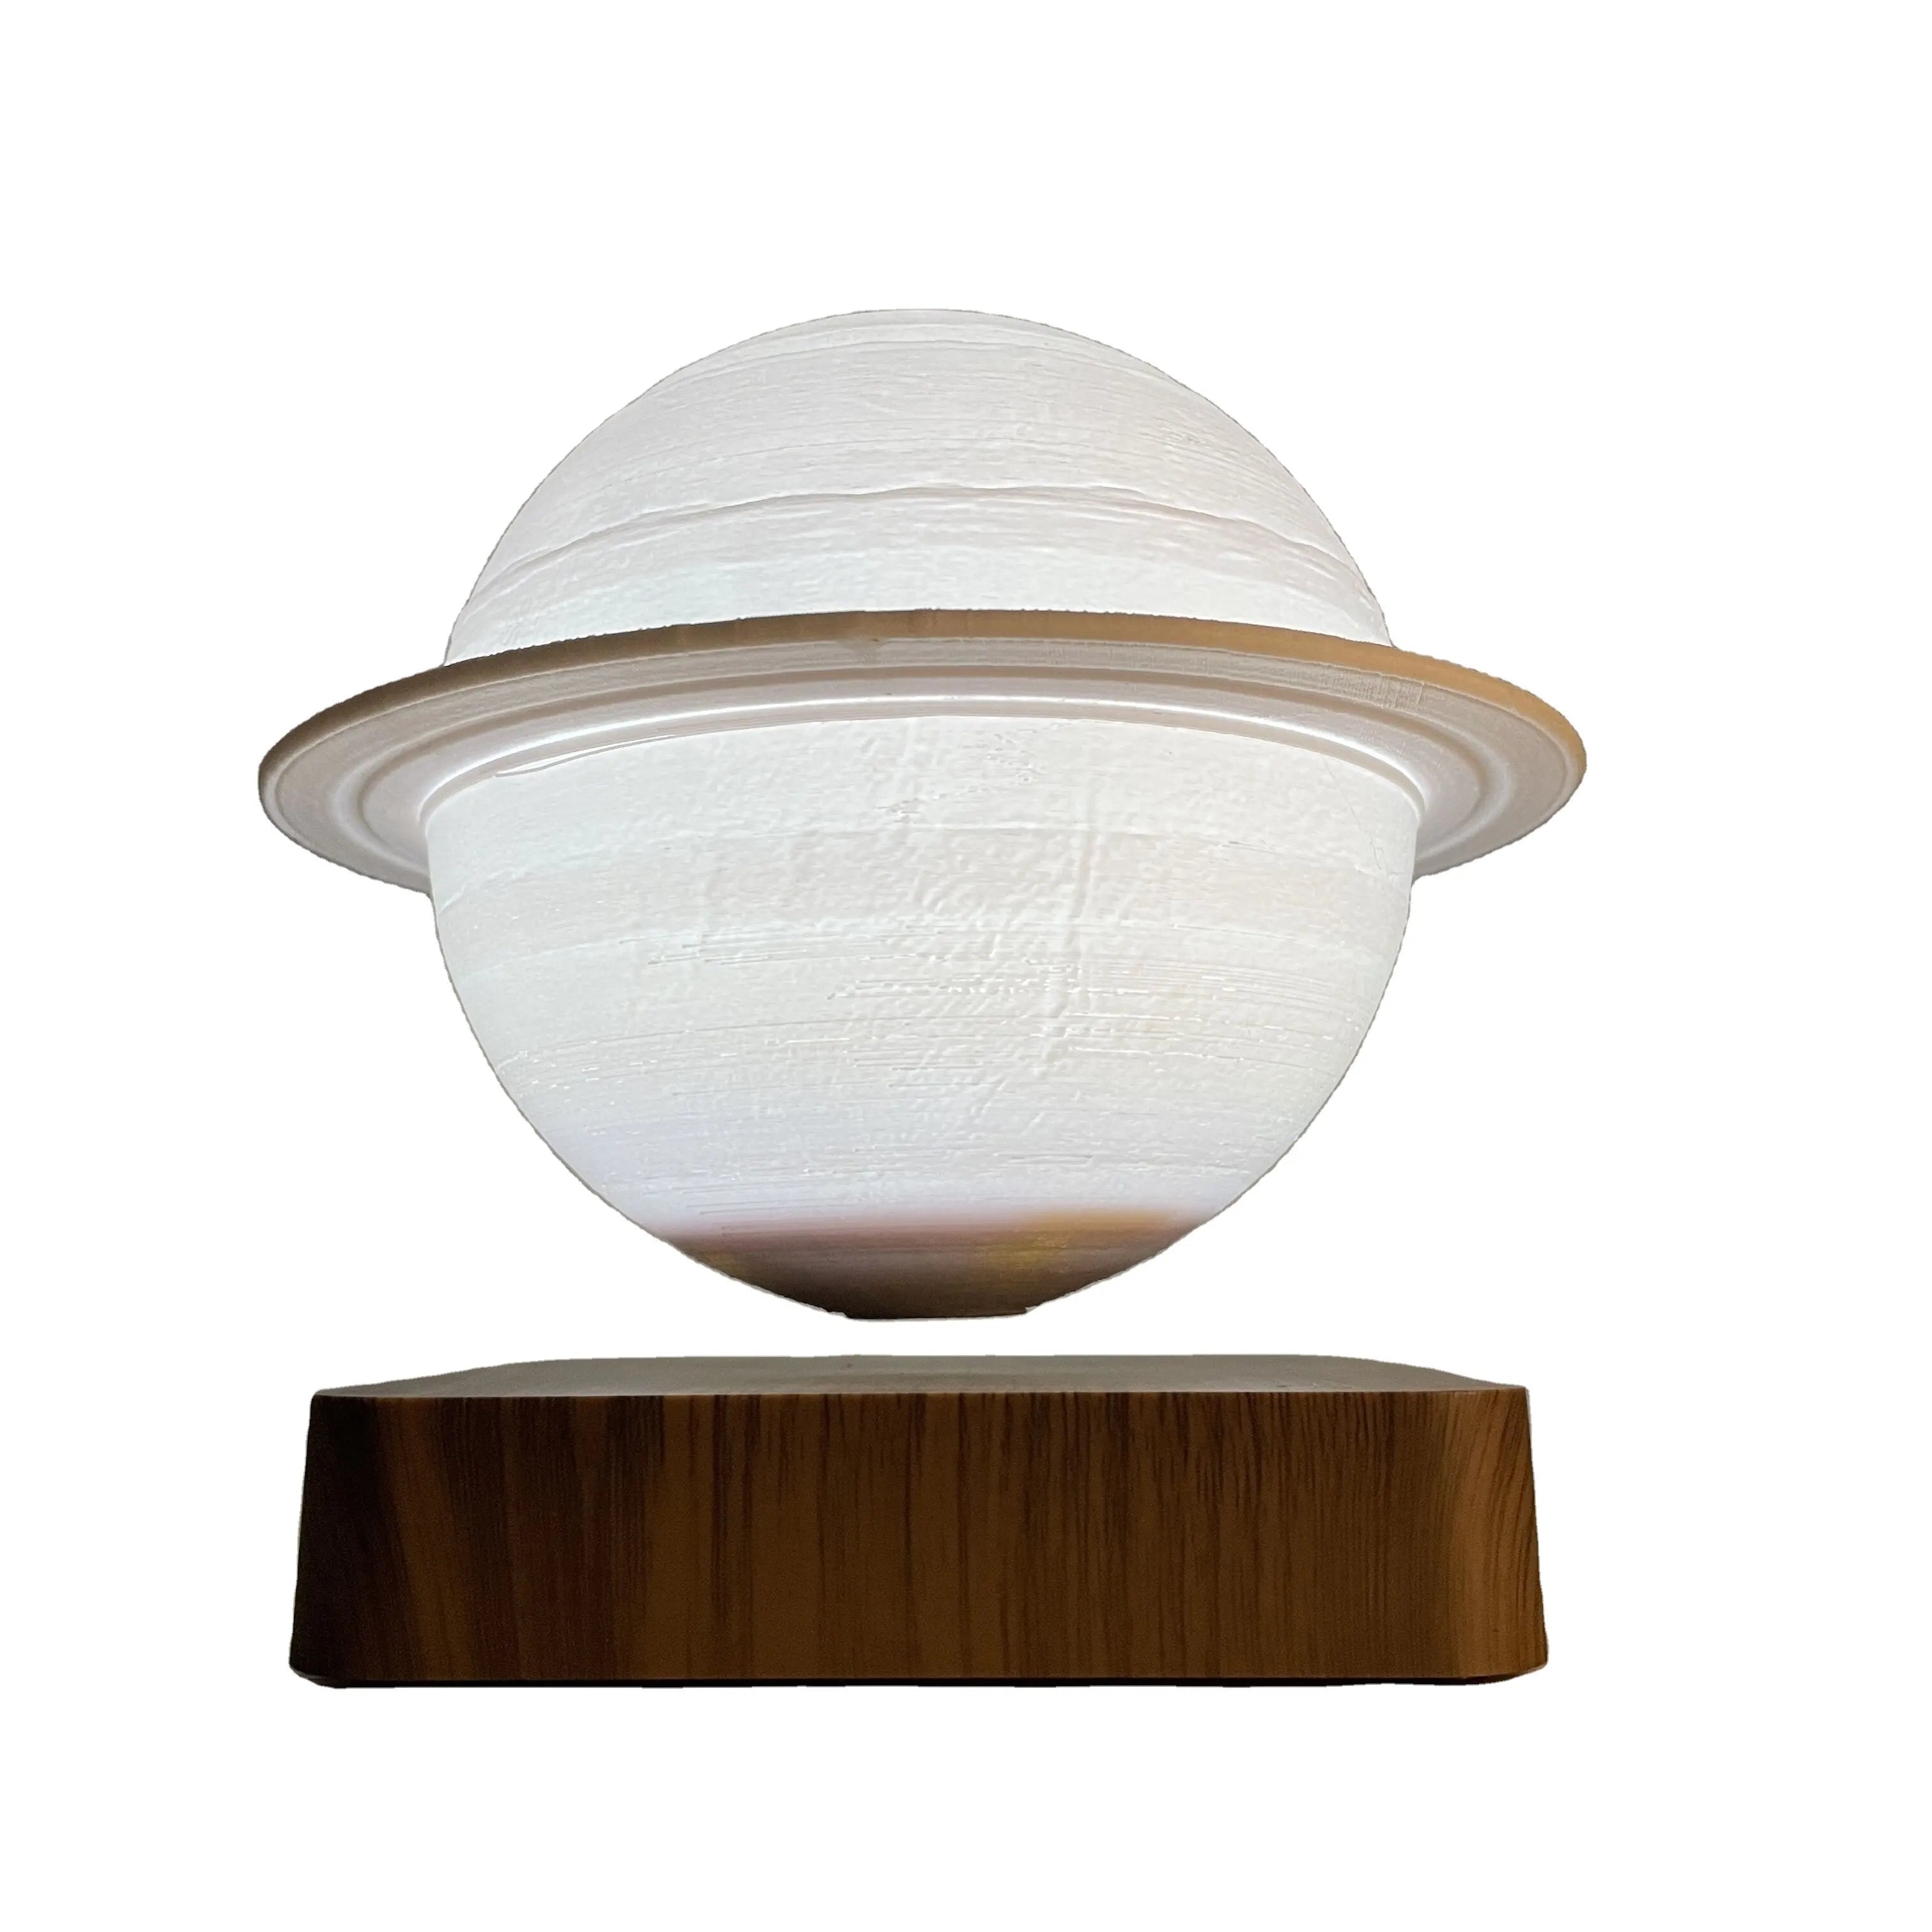 Saturn Lamp hovering elegantly above its magnetic base